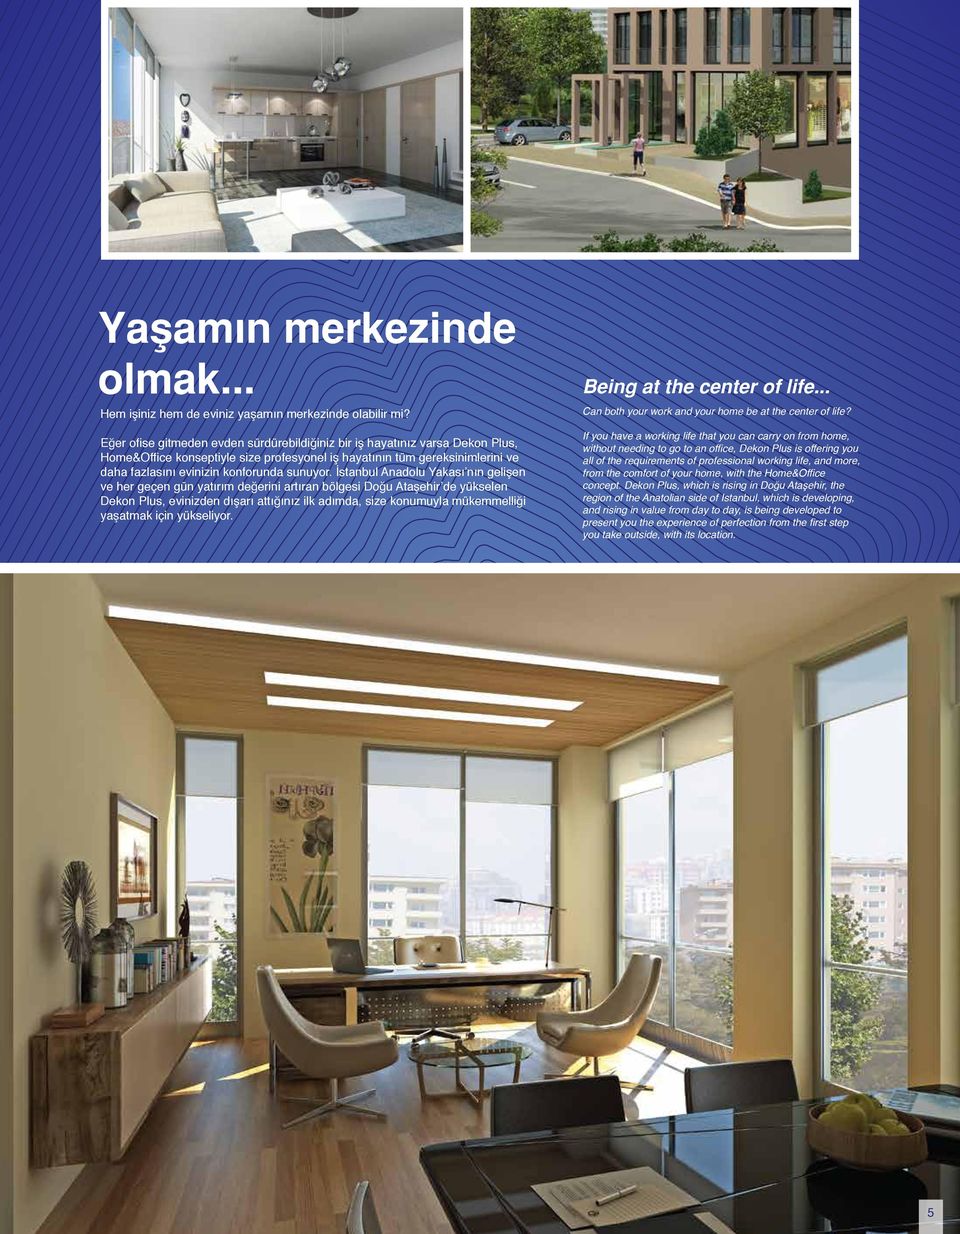 İstanbul Anadolu Yakası nın gelişen ve her geçen gün yatırım değerini artıran bölgesi Doğu Ataşehir de yükselen Dekon Plus, evinizden dışarı attığınız ilk adımda, size konumuyla mükemmelliği yaşatmak